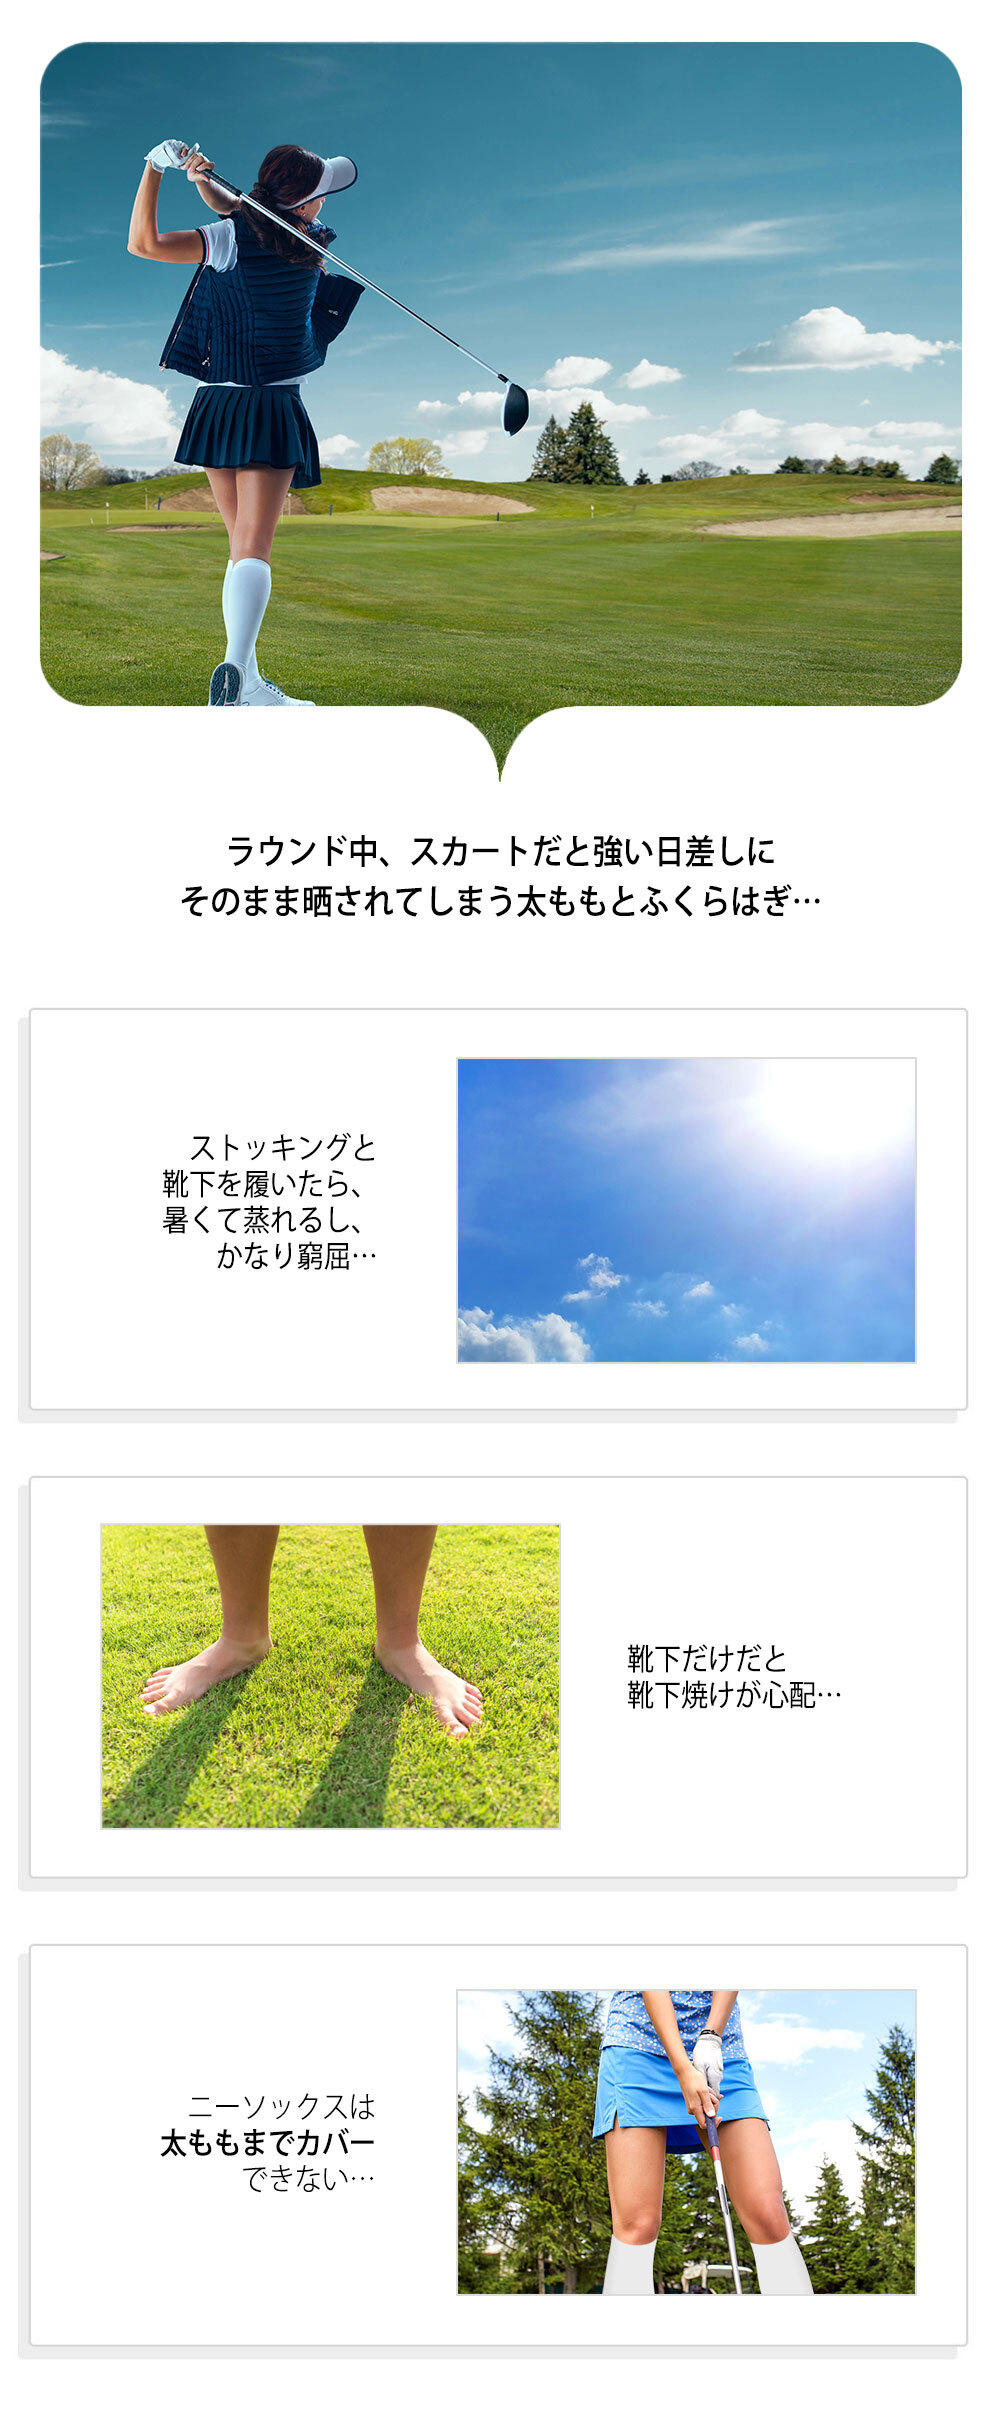 ゴルフストッキング | BLCA 日本公式サイト